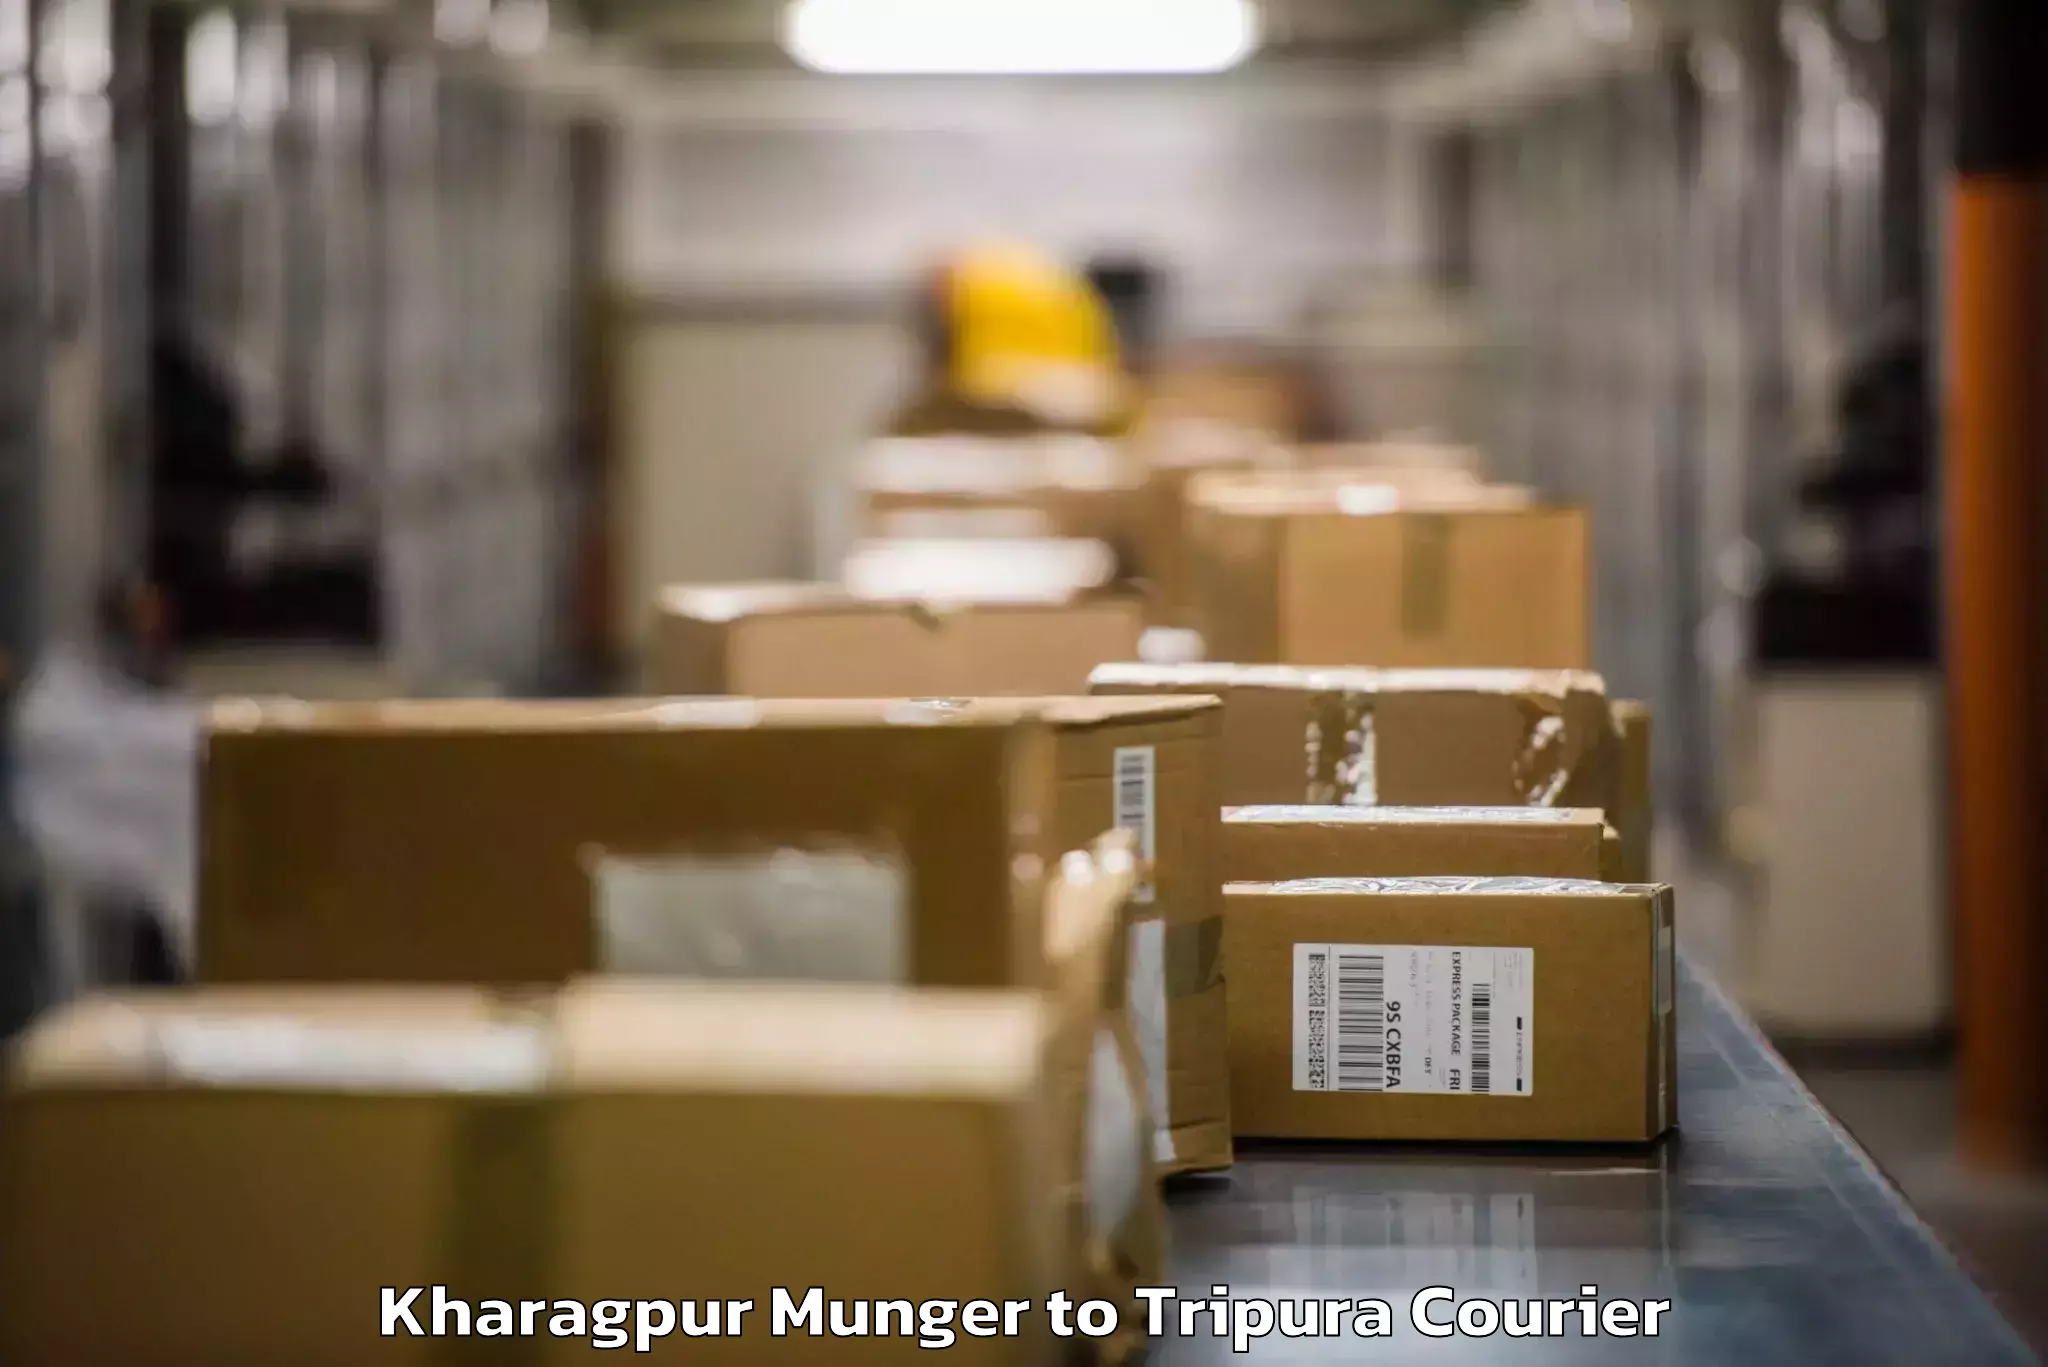 Personal effects shipping Kharagpur Munger to Bishalgarh